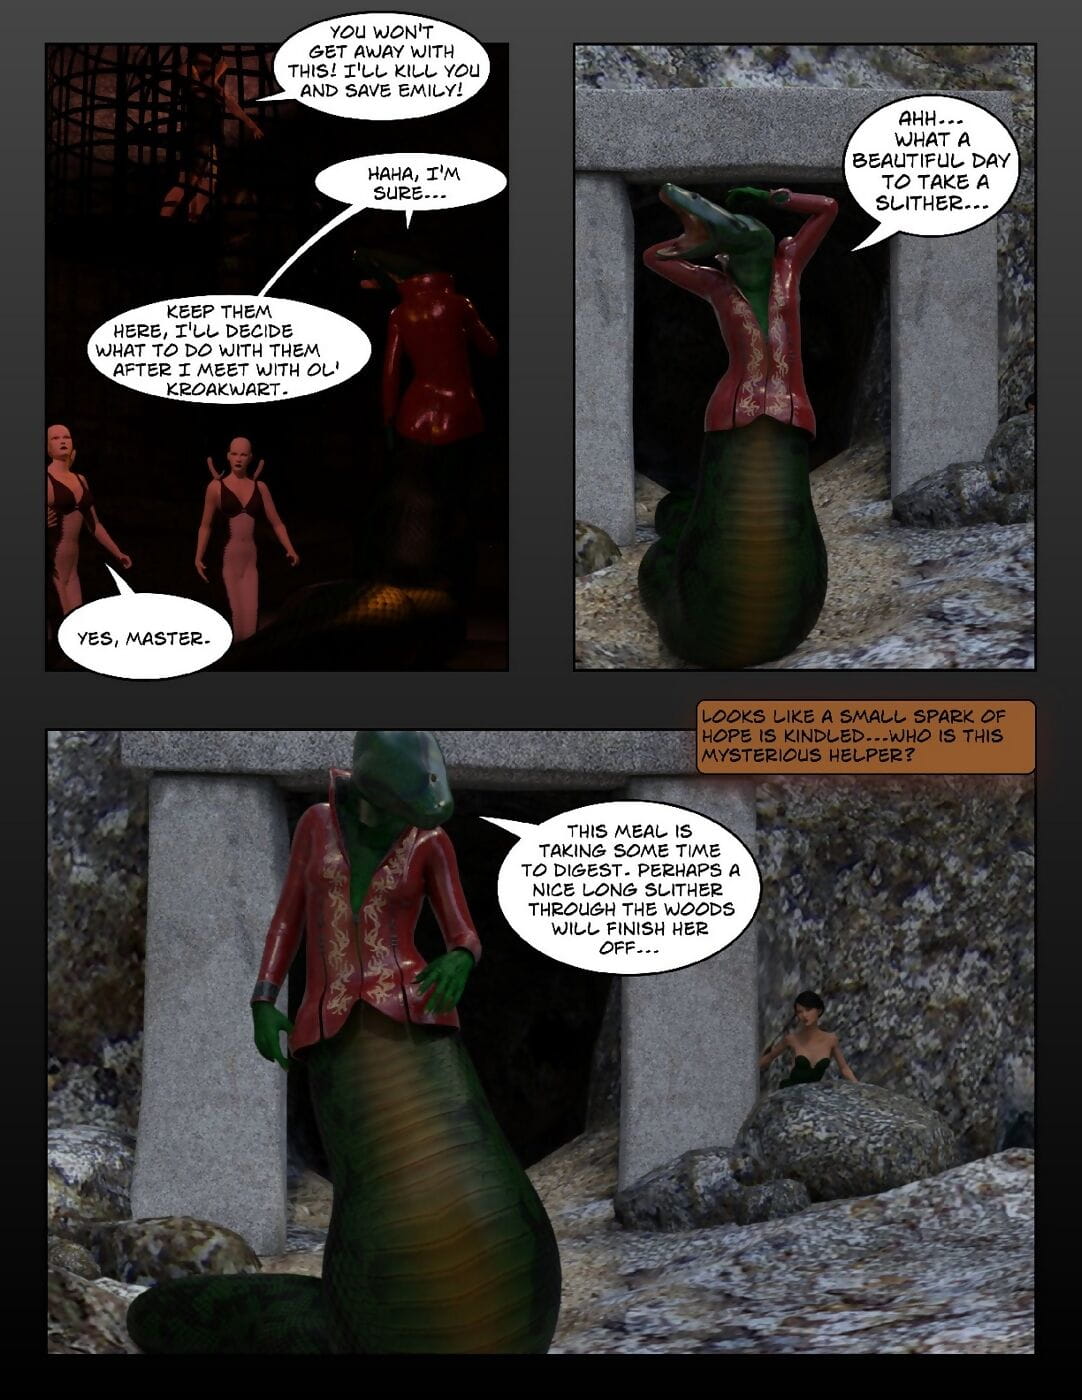 早 エミリ - の gorgons 復讐 page 1